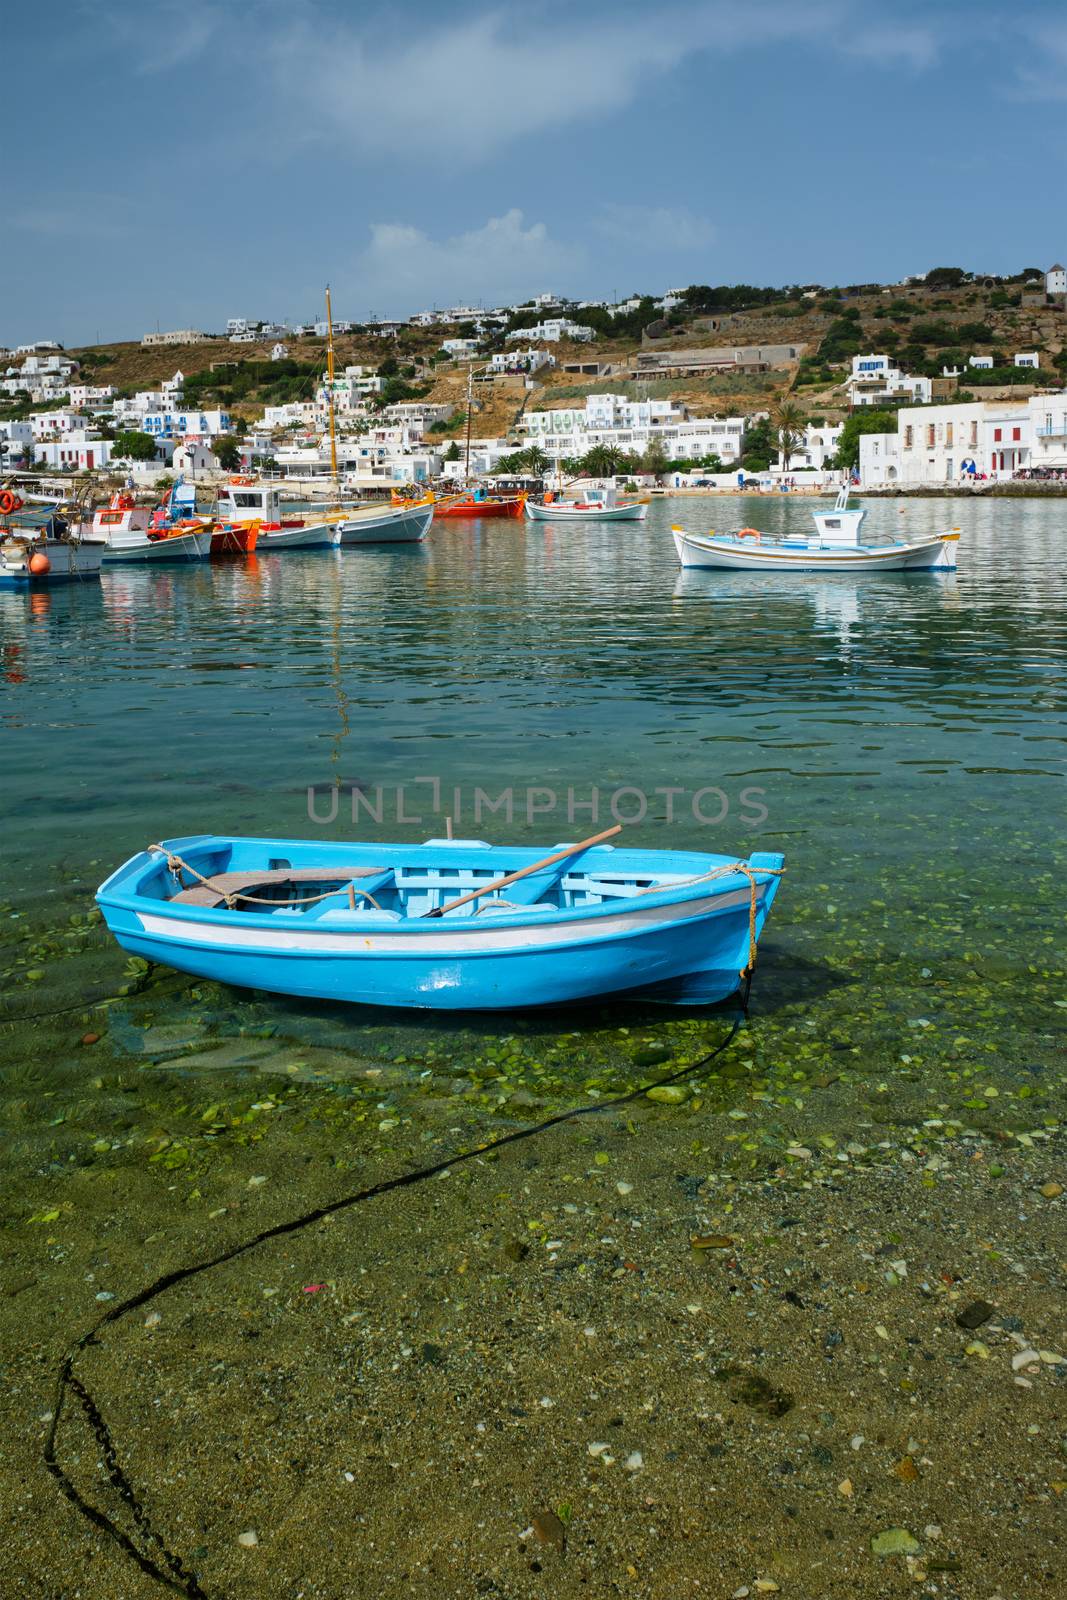 Greek fishing boat in clear sea water in port of Mykonos. Chora town, Mykonos, Greece